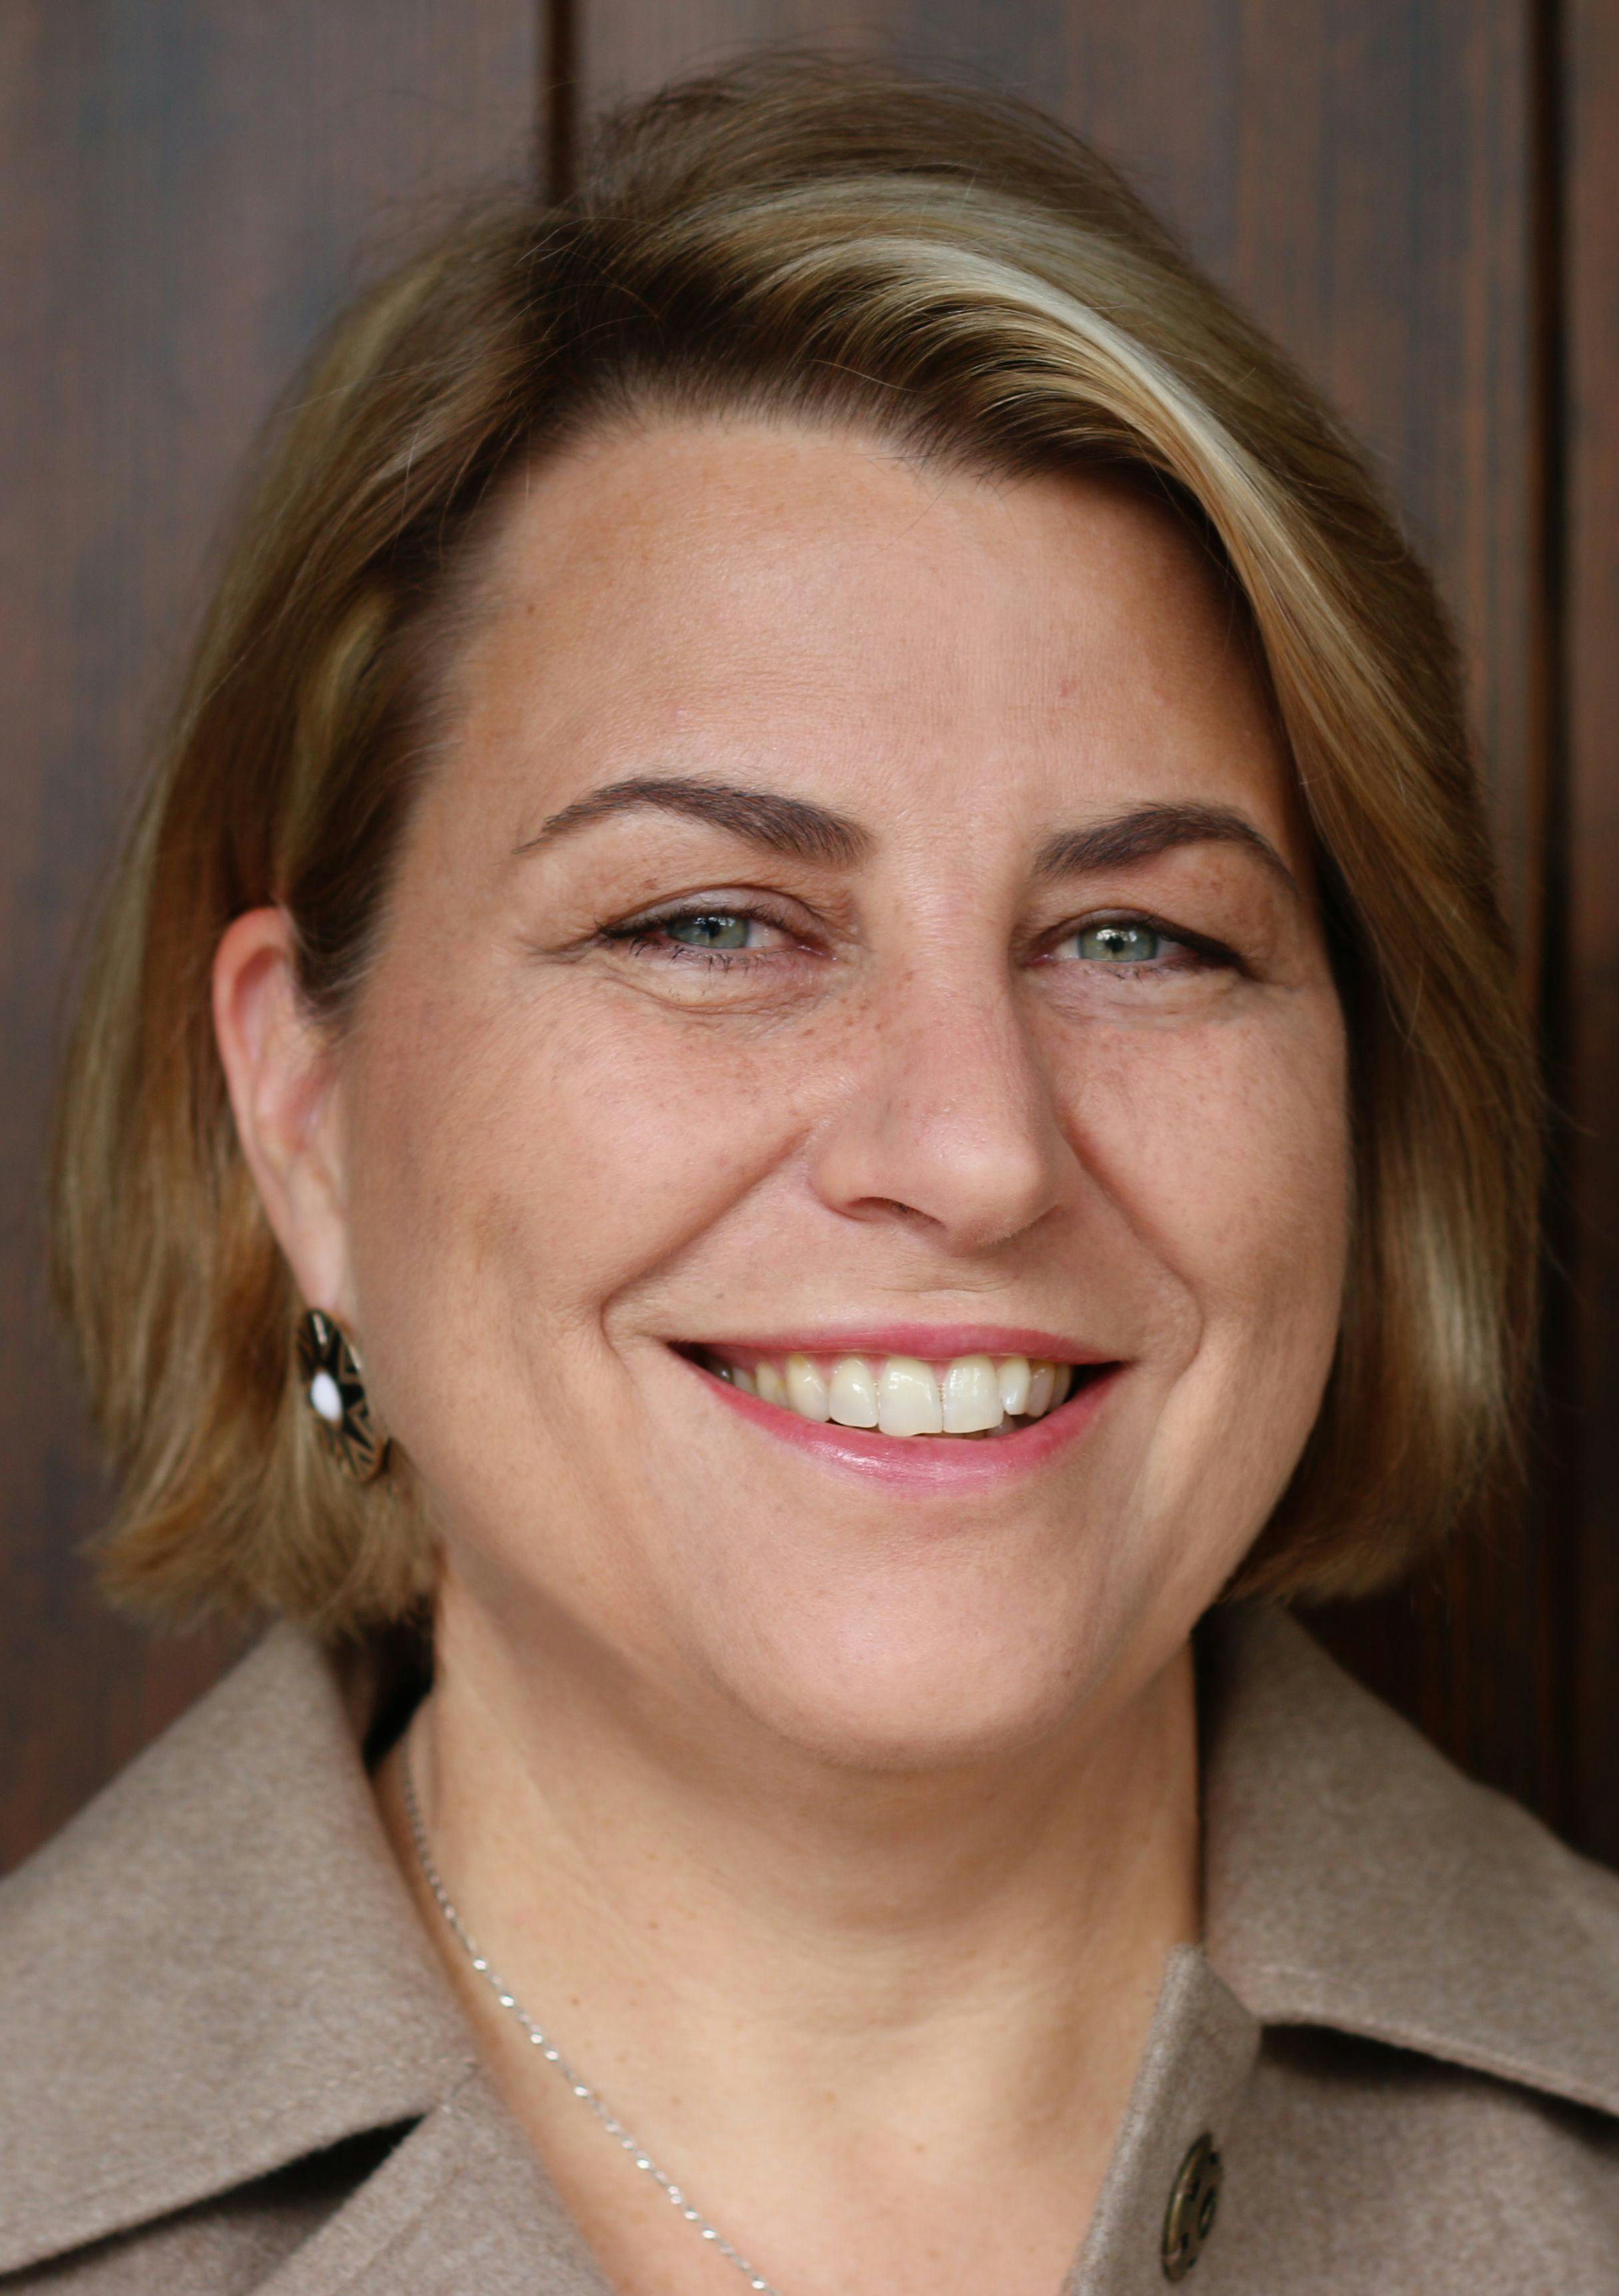 Susan Wood
CEO, VIDA